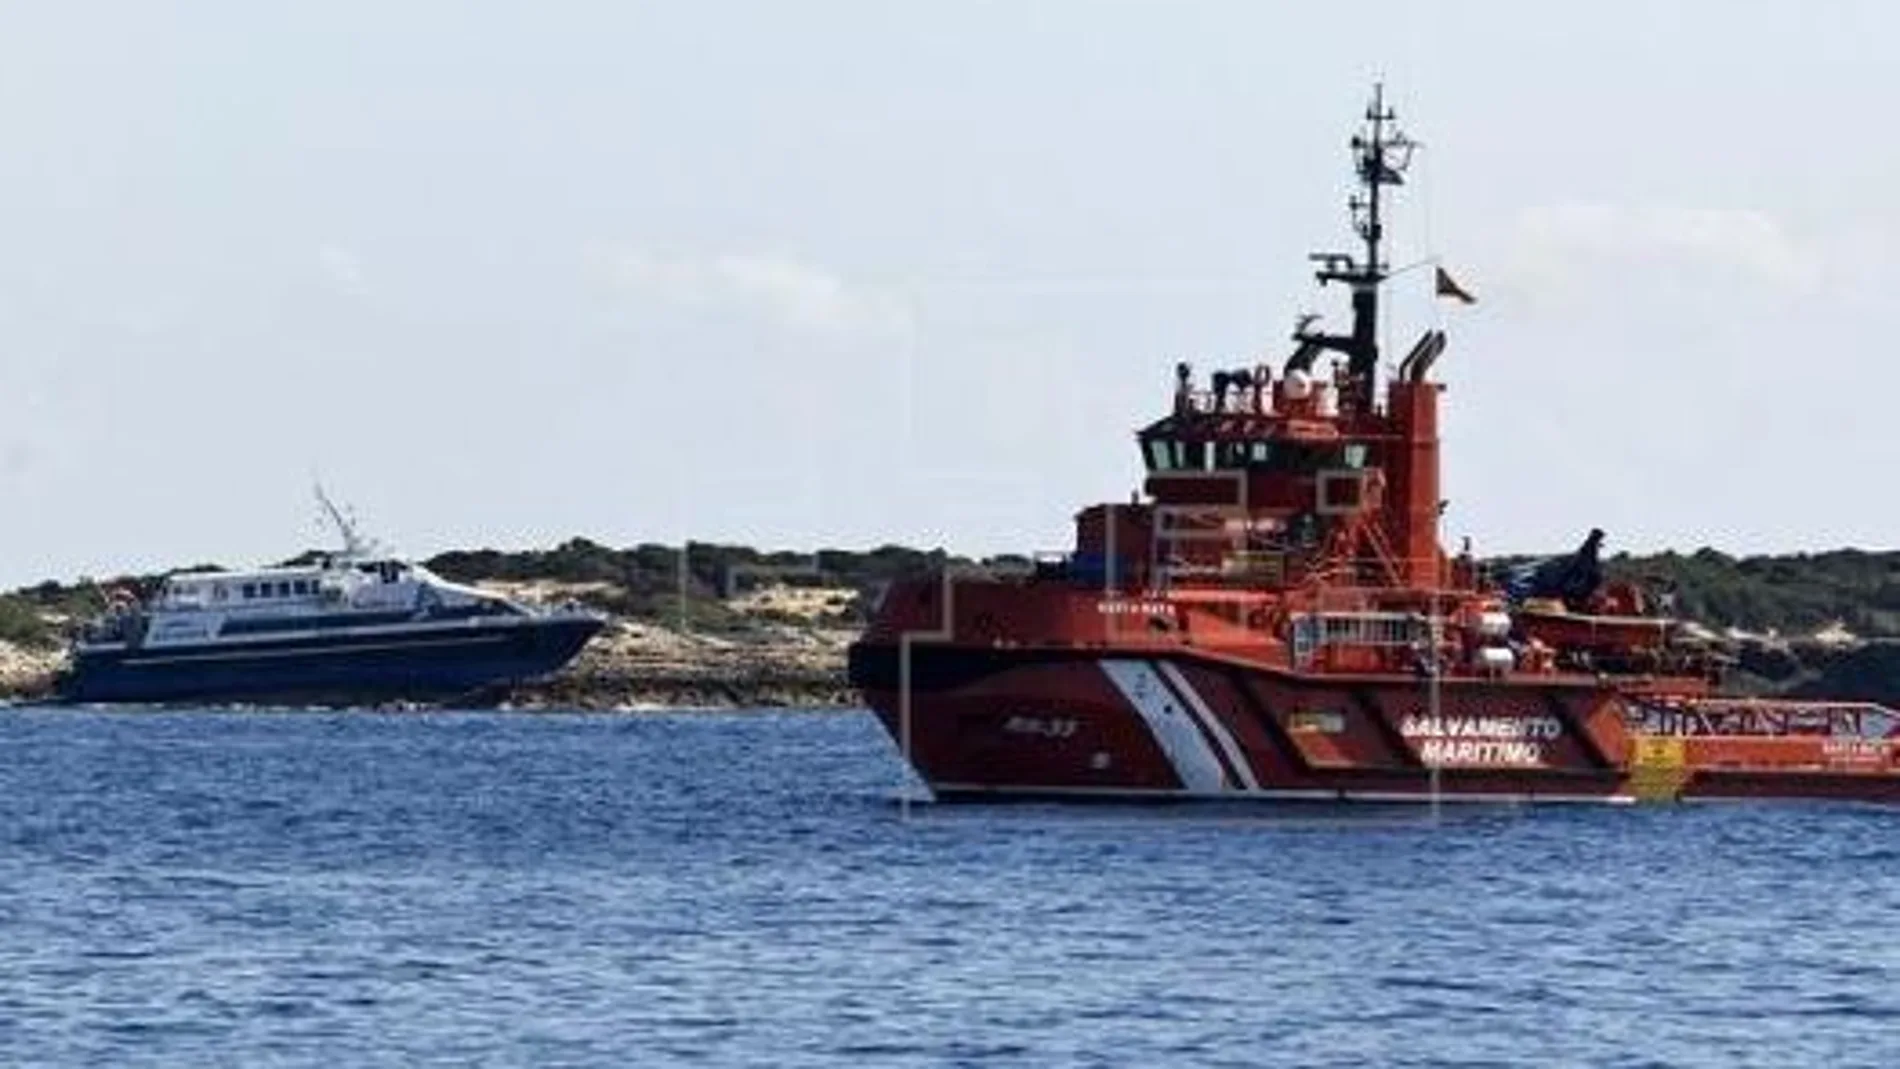 Salvamento marítimo recibió la llamada de socorro por la caída al agua de una persona desde una embarcación sobre las 13:00 horas.